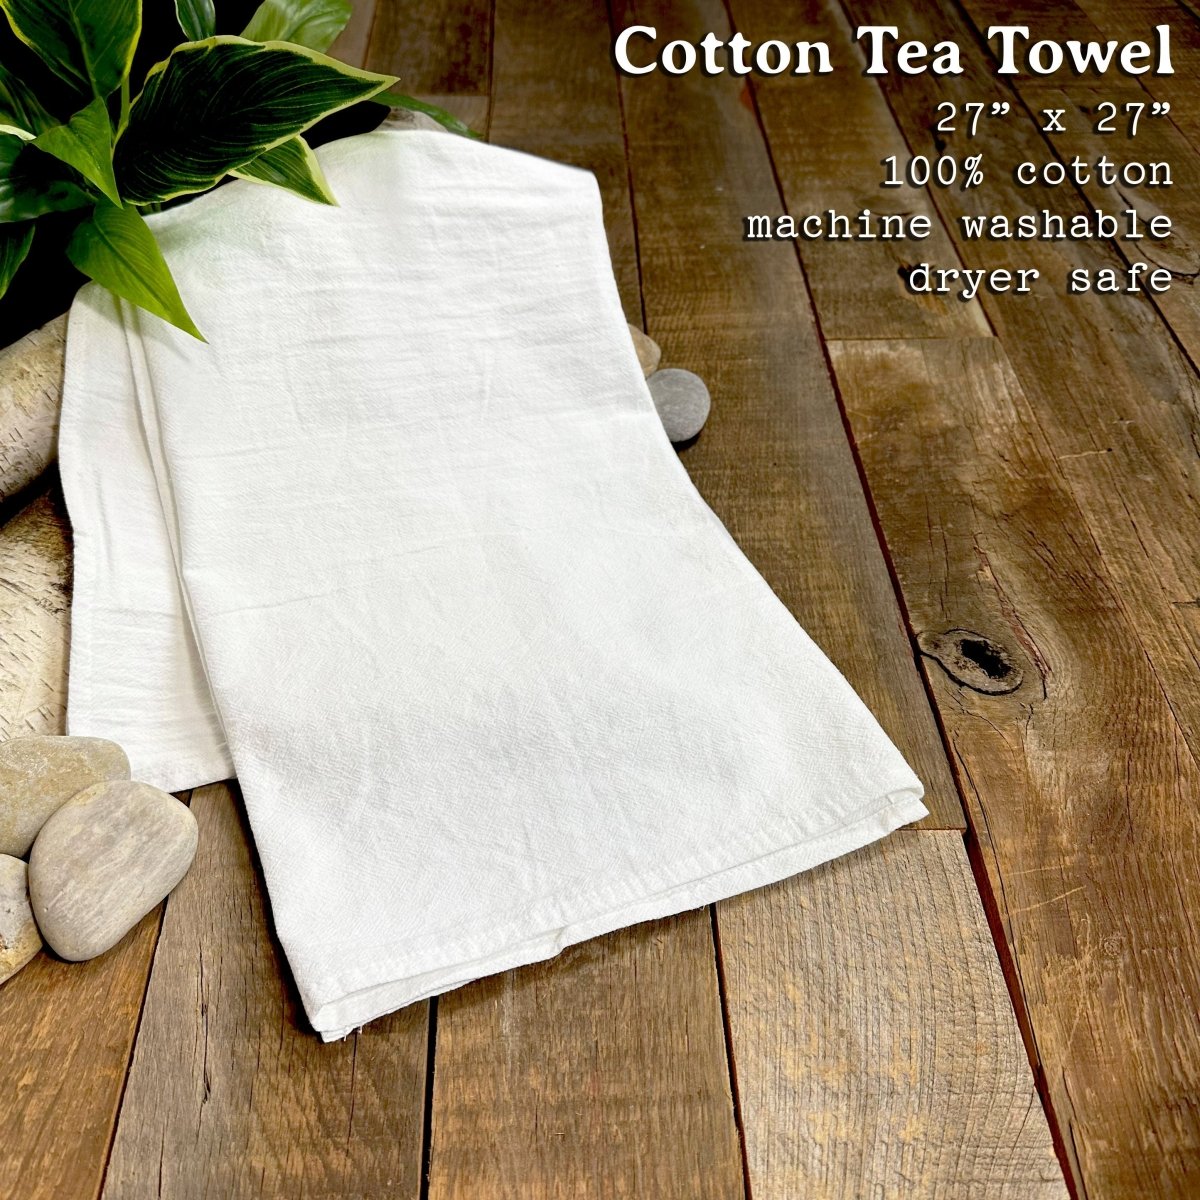 USA est 1776 - Cotton Tea Towel - Taplike